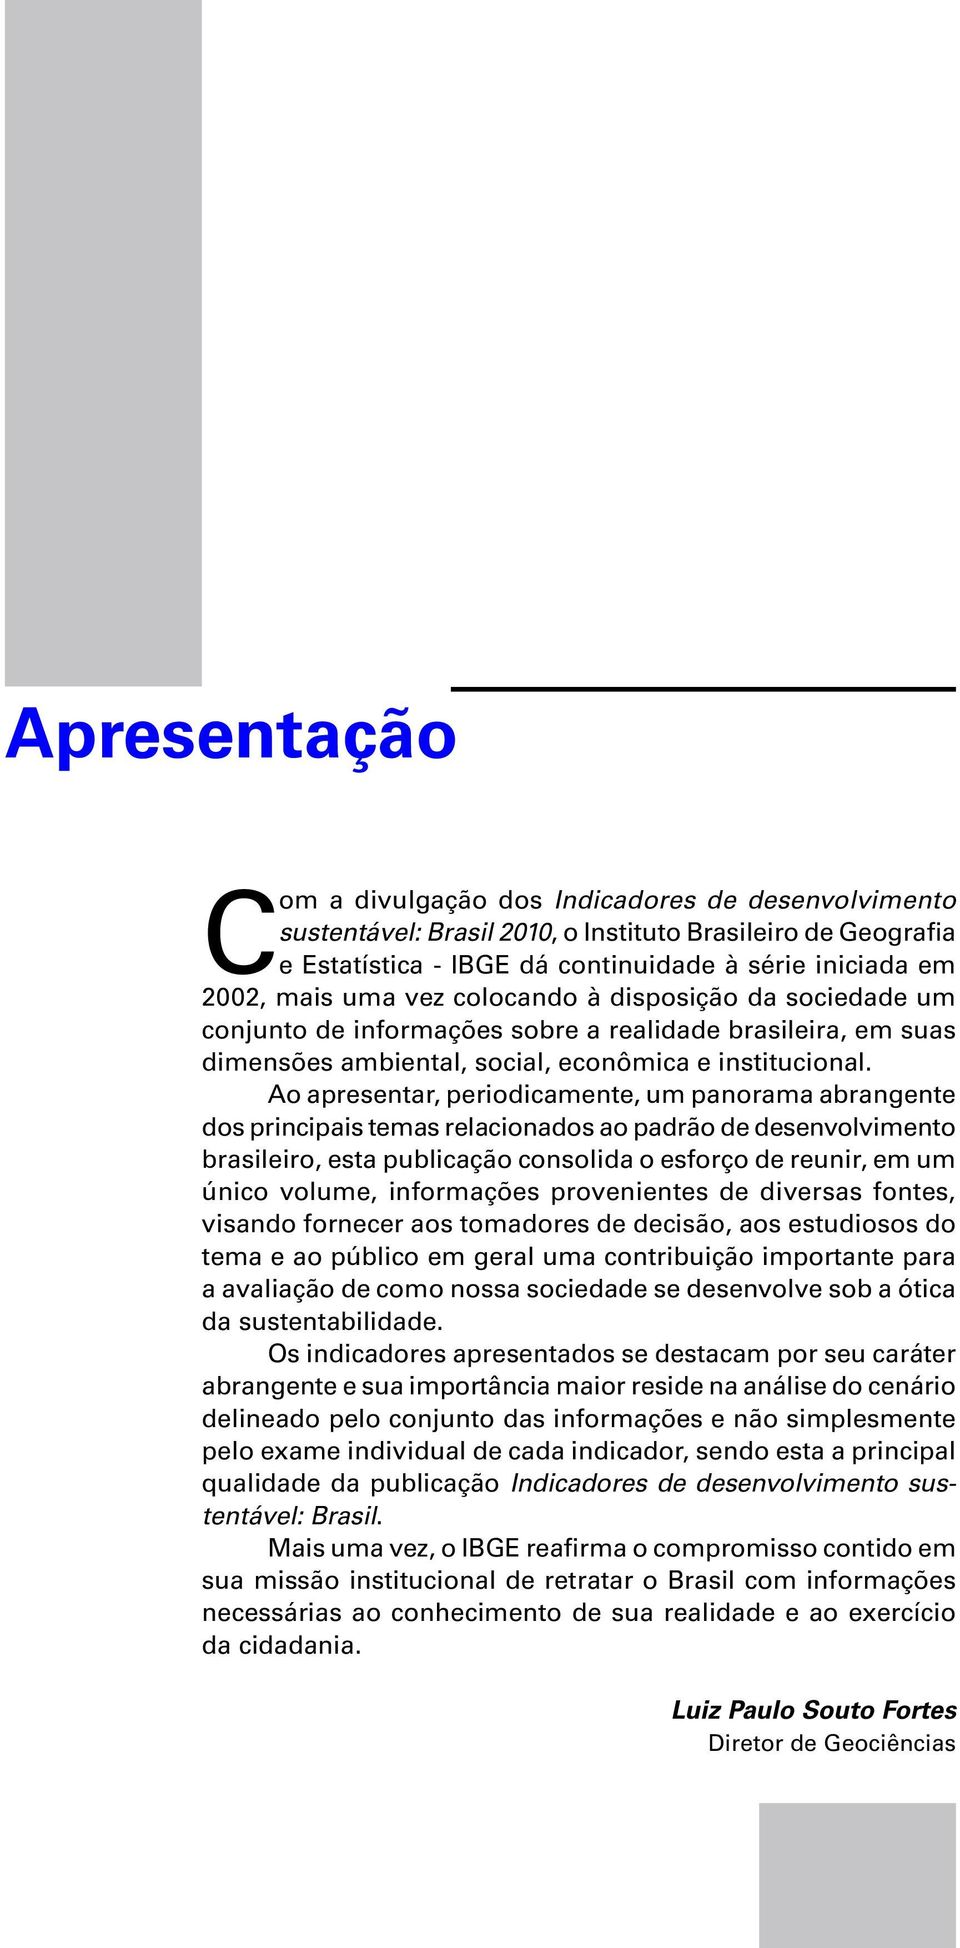 Ao apresentar, periodicamente, um panorama abrangente dos principais temas relacionados ao padrão de desenvolvimento brasileiro, esta publicação consolida o esforço de reunir, em um único volume,